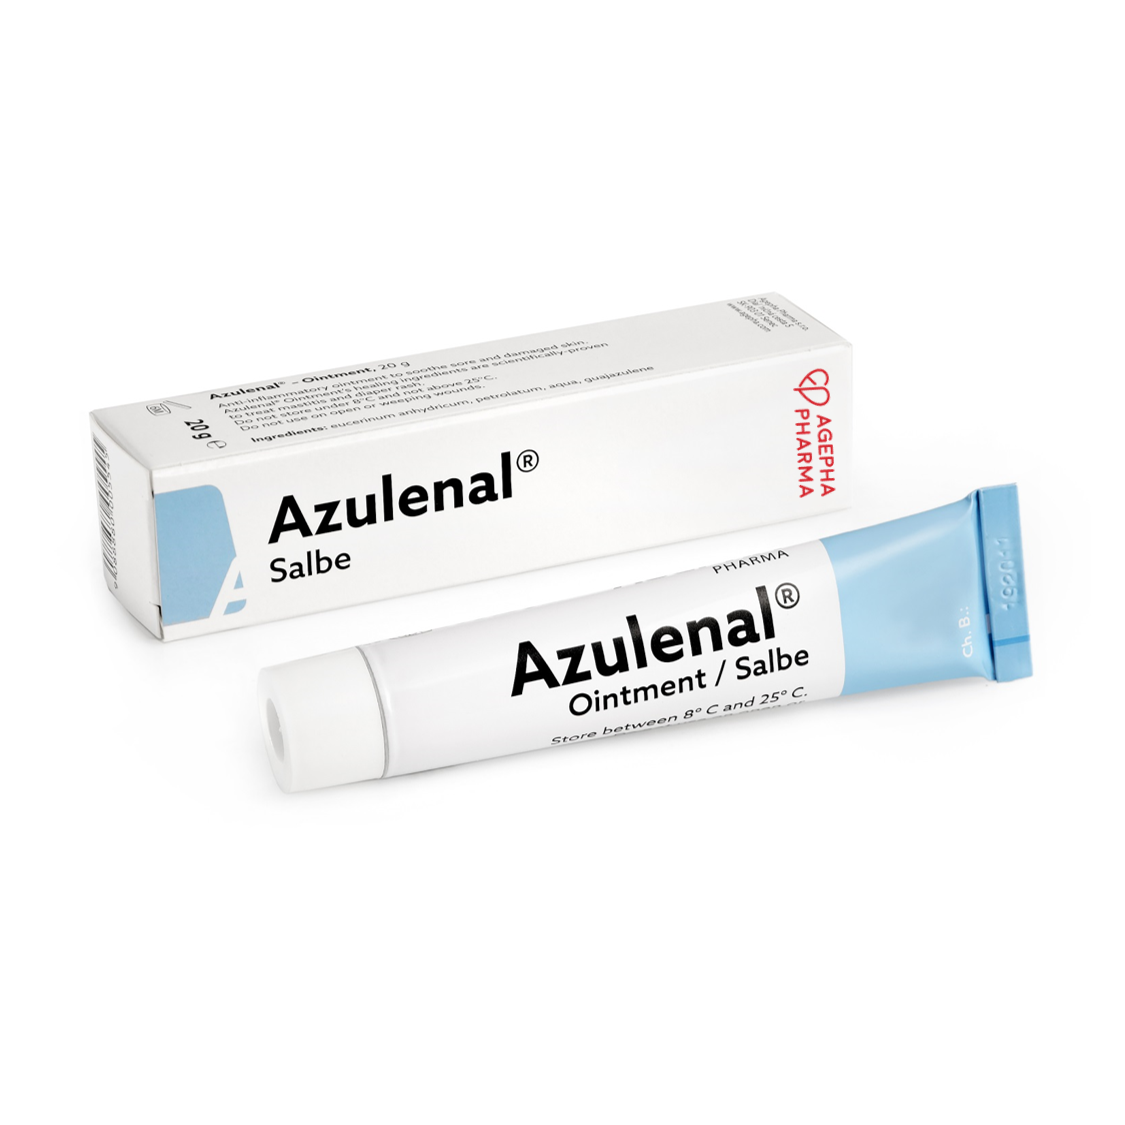 AZULENAL® SALBE | AZULENAL® OINTMENT